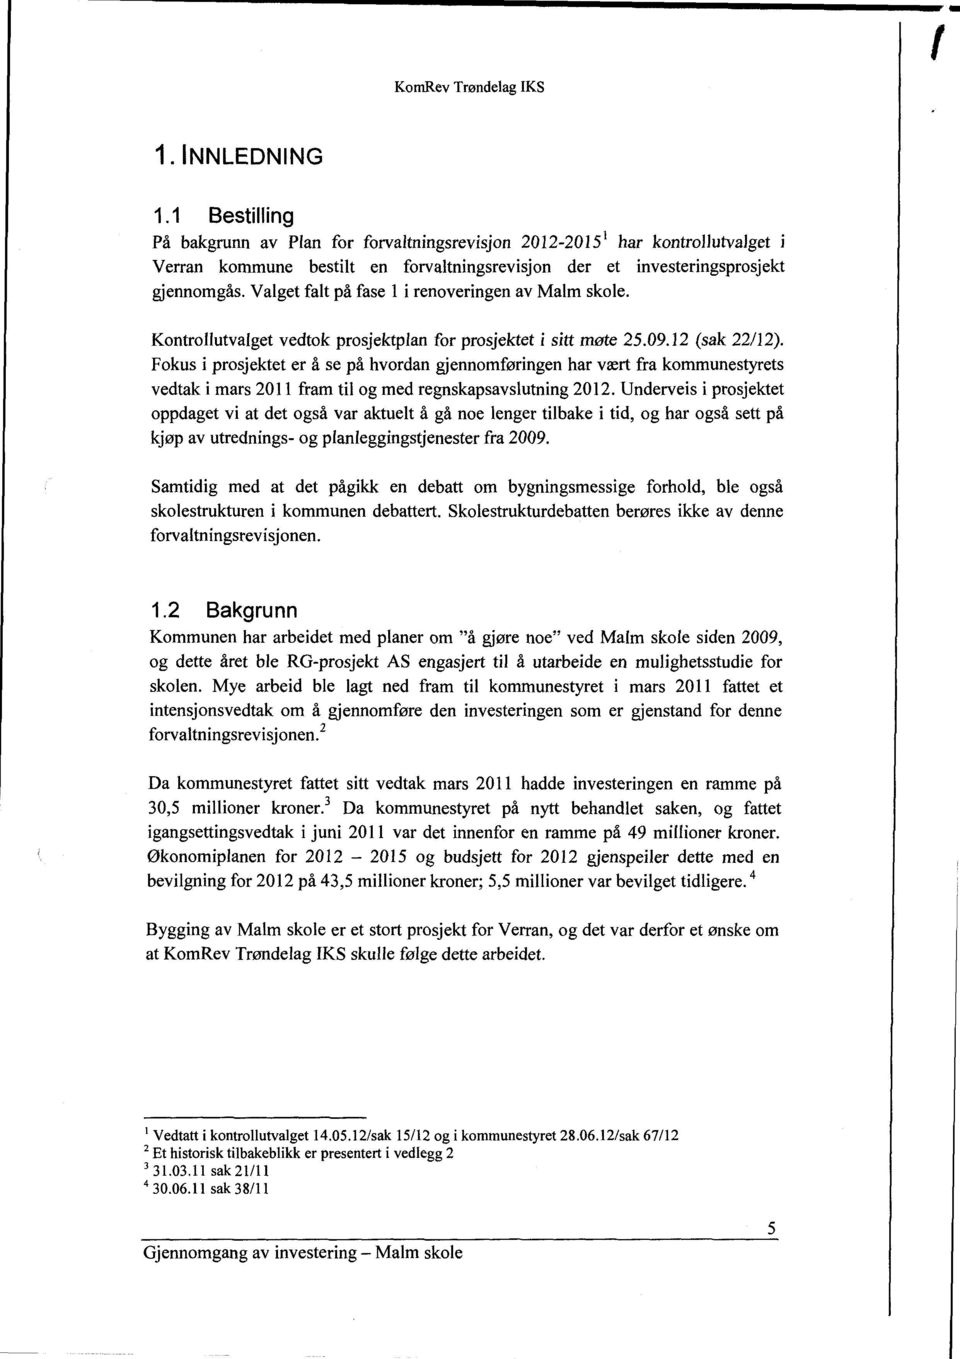 Valget falt på fase 1 irenoveringen av Malm skole. Kontrollutvalget vedtok prosjektplan for prosjektet i sitt møte 25.09.12 (sak 22/12).